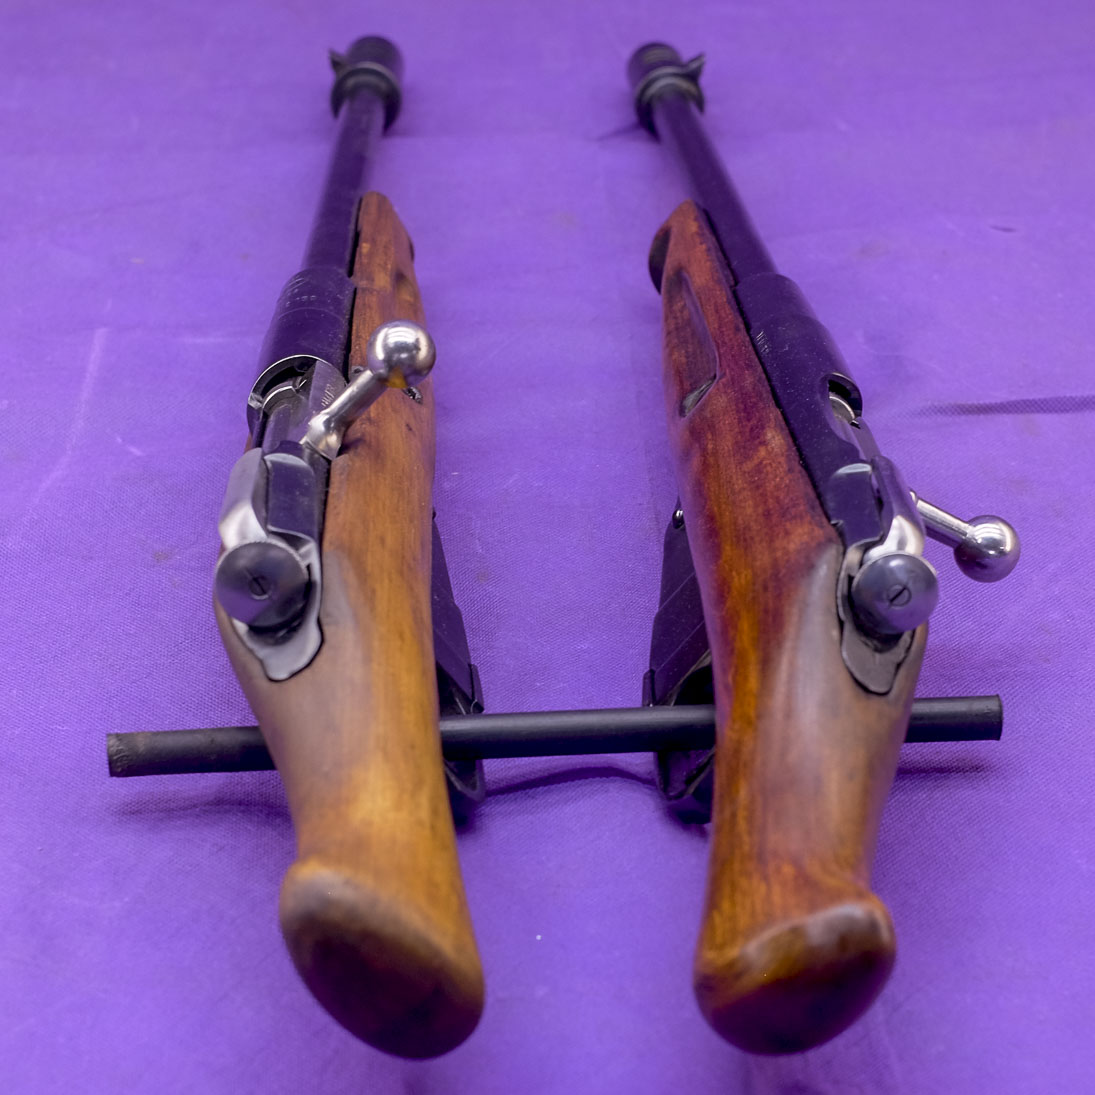 custom nagant rifle